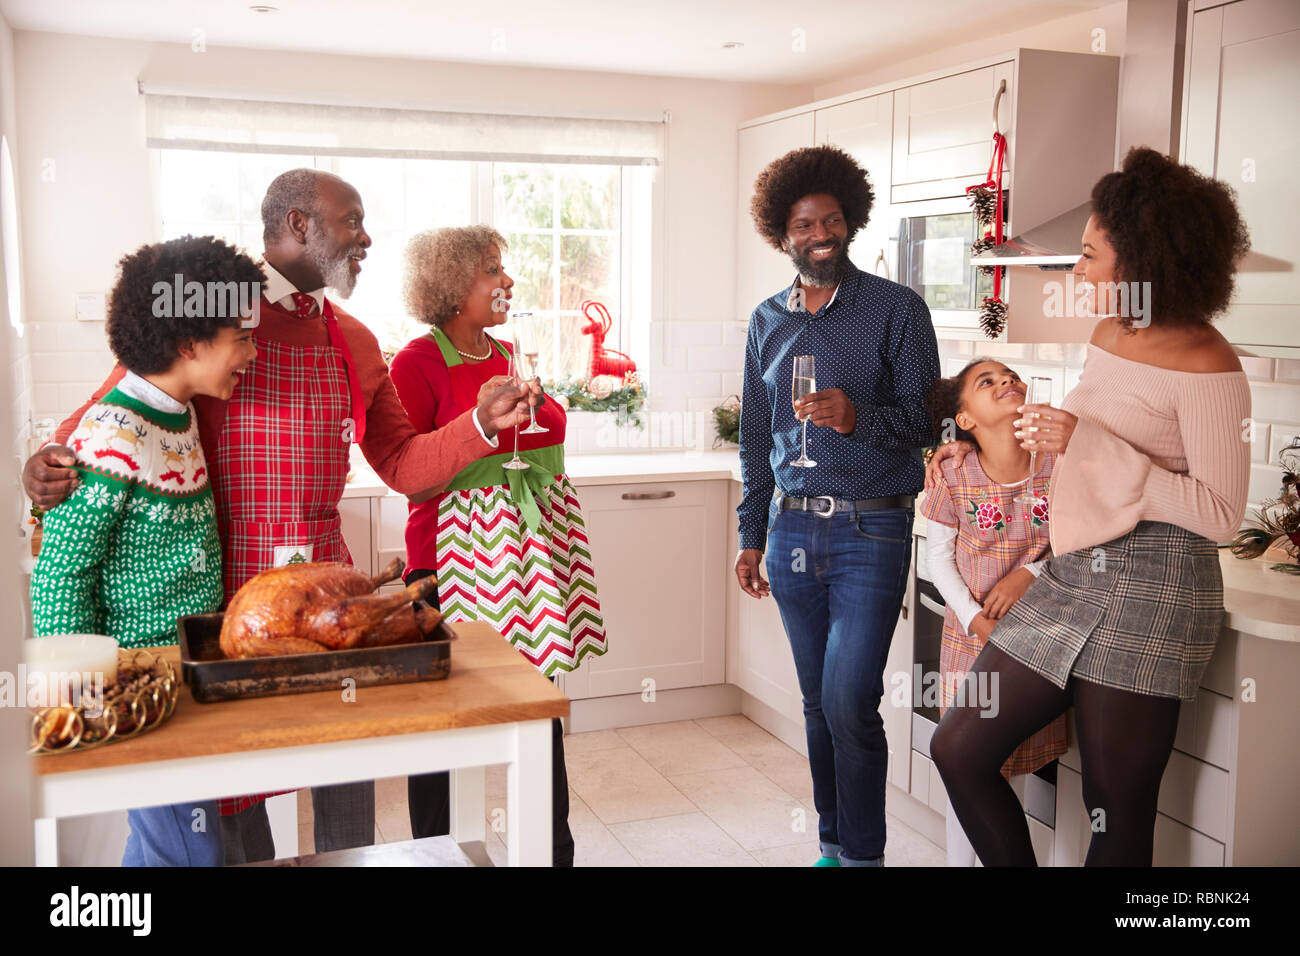 Course mixte, multi generation family de parler et de boire du champagne dans la cuisine pendant qu'ils préparent ensemble le dîner de Noël Banque D'Images